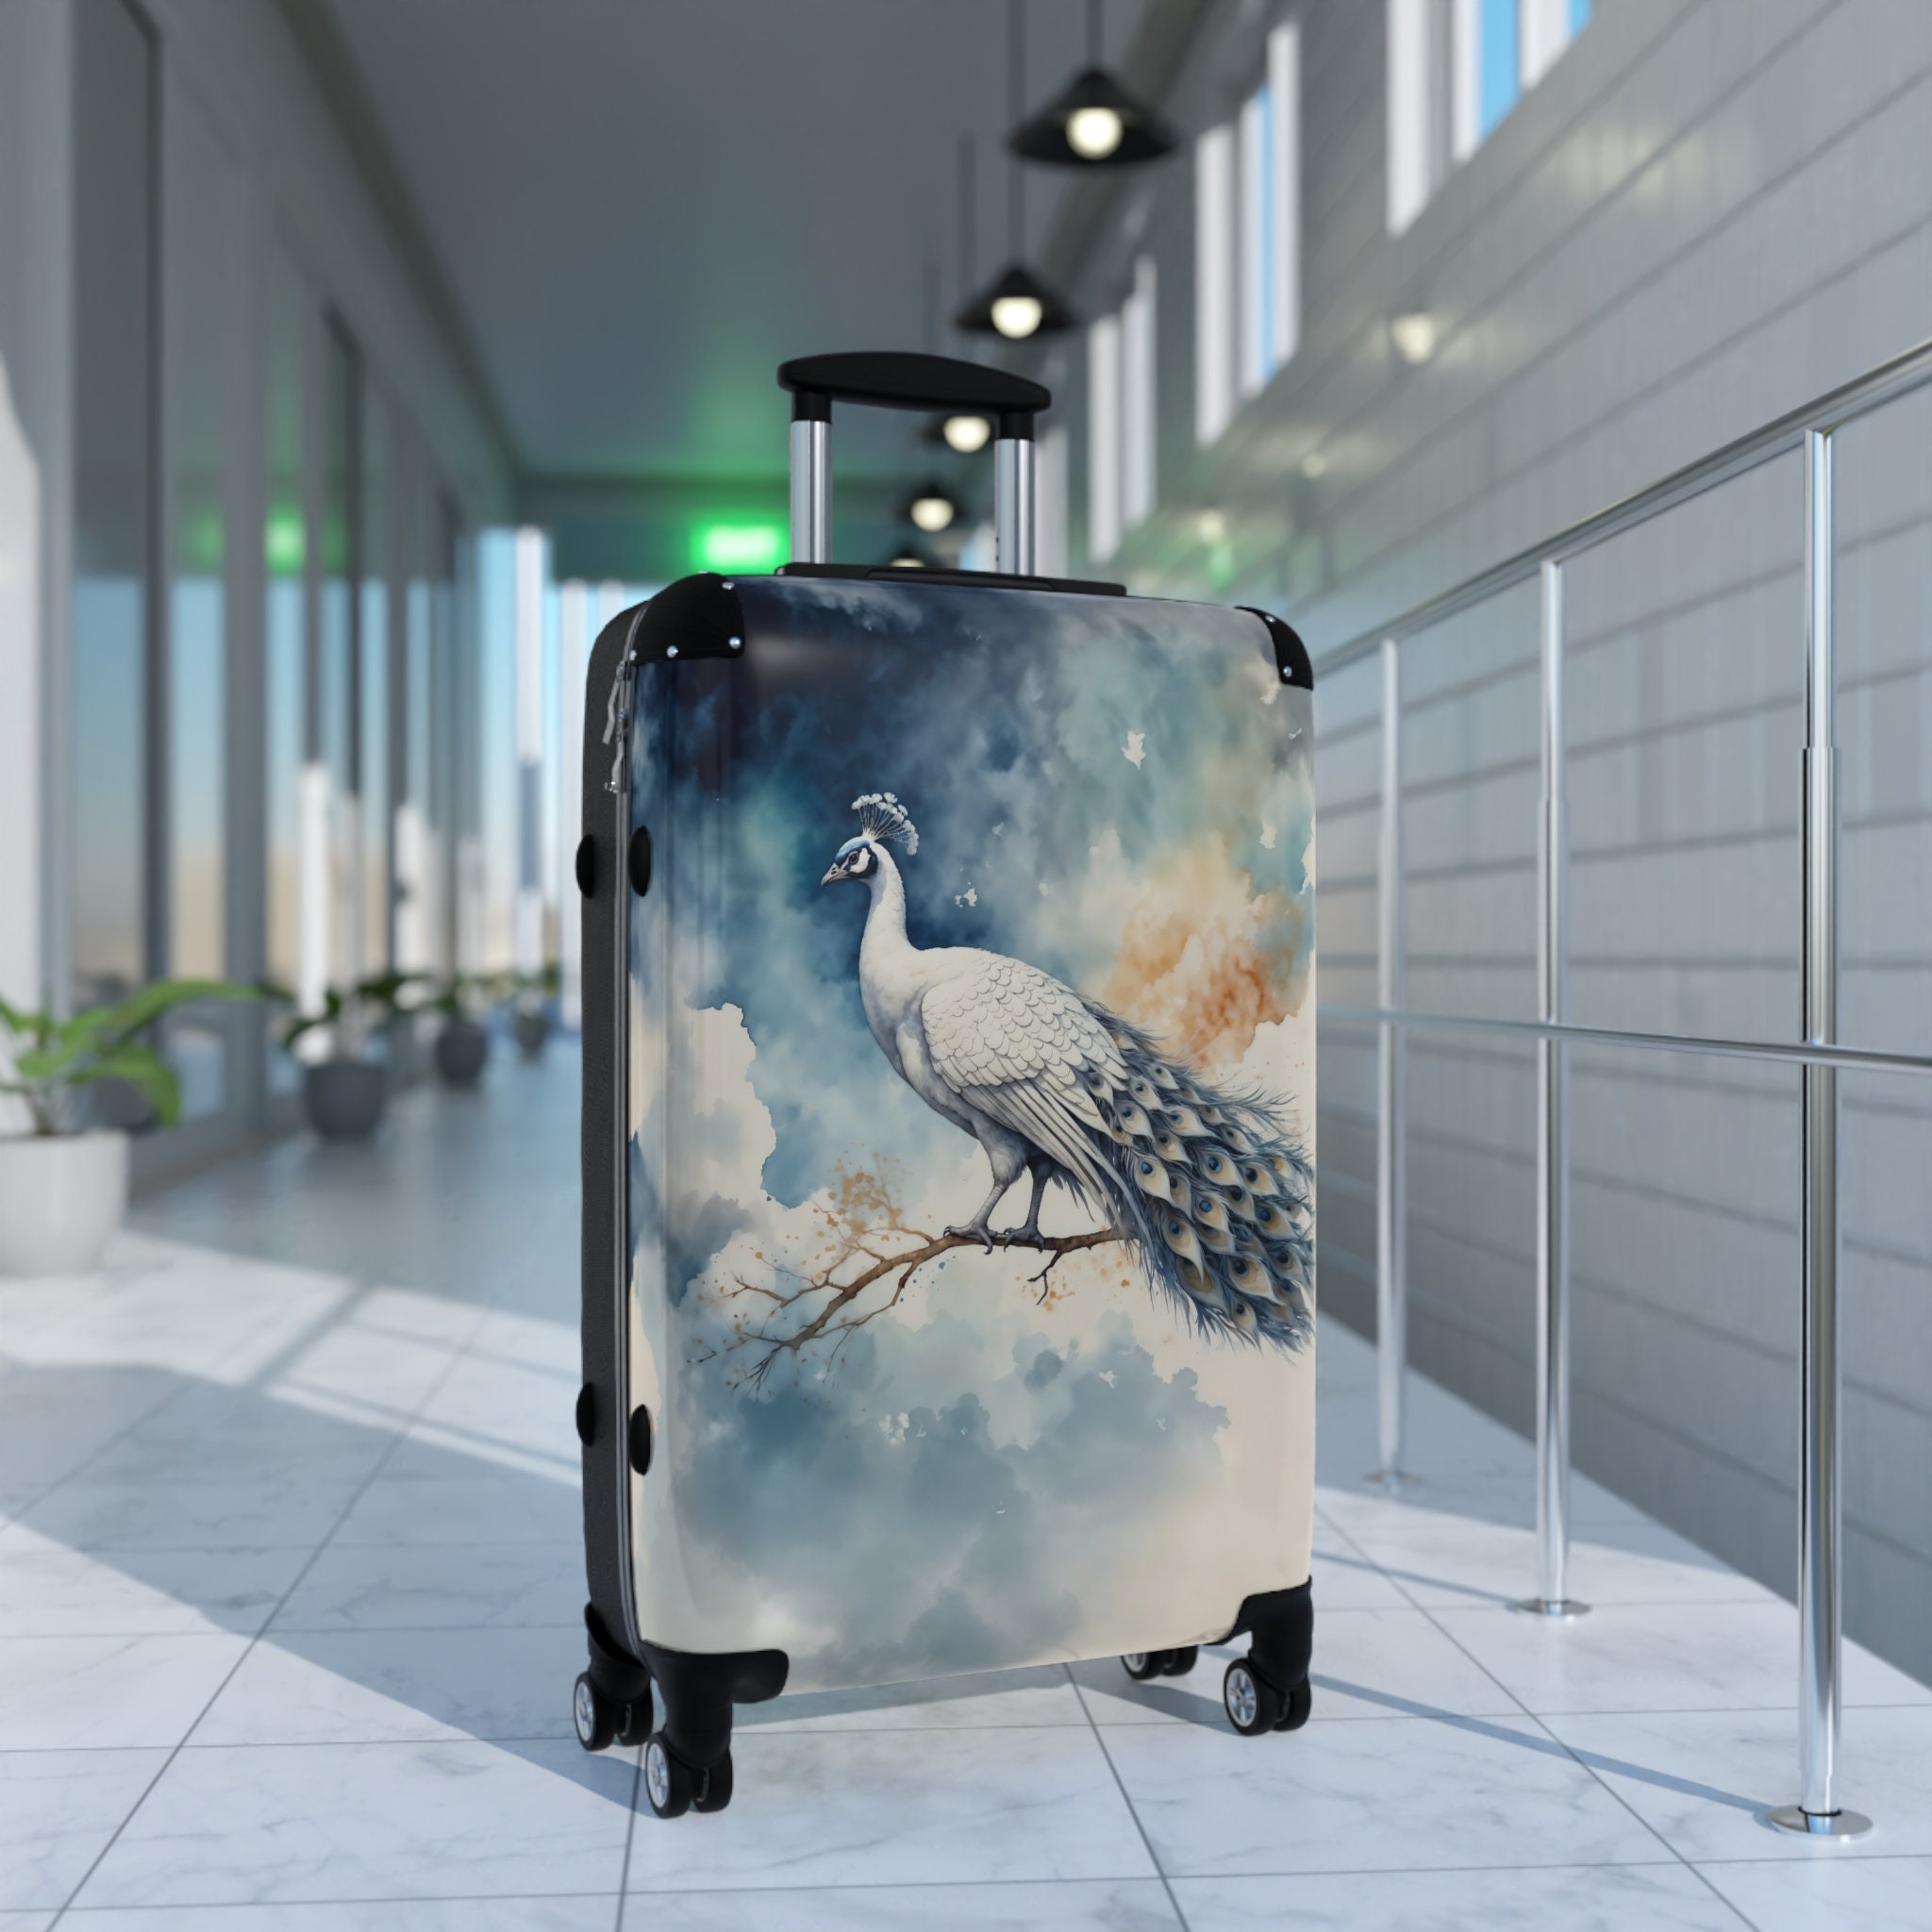 Celestial Watercolor White-Blue Peacock Portrait Suitcase